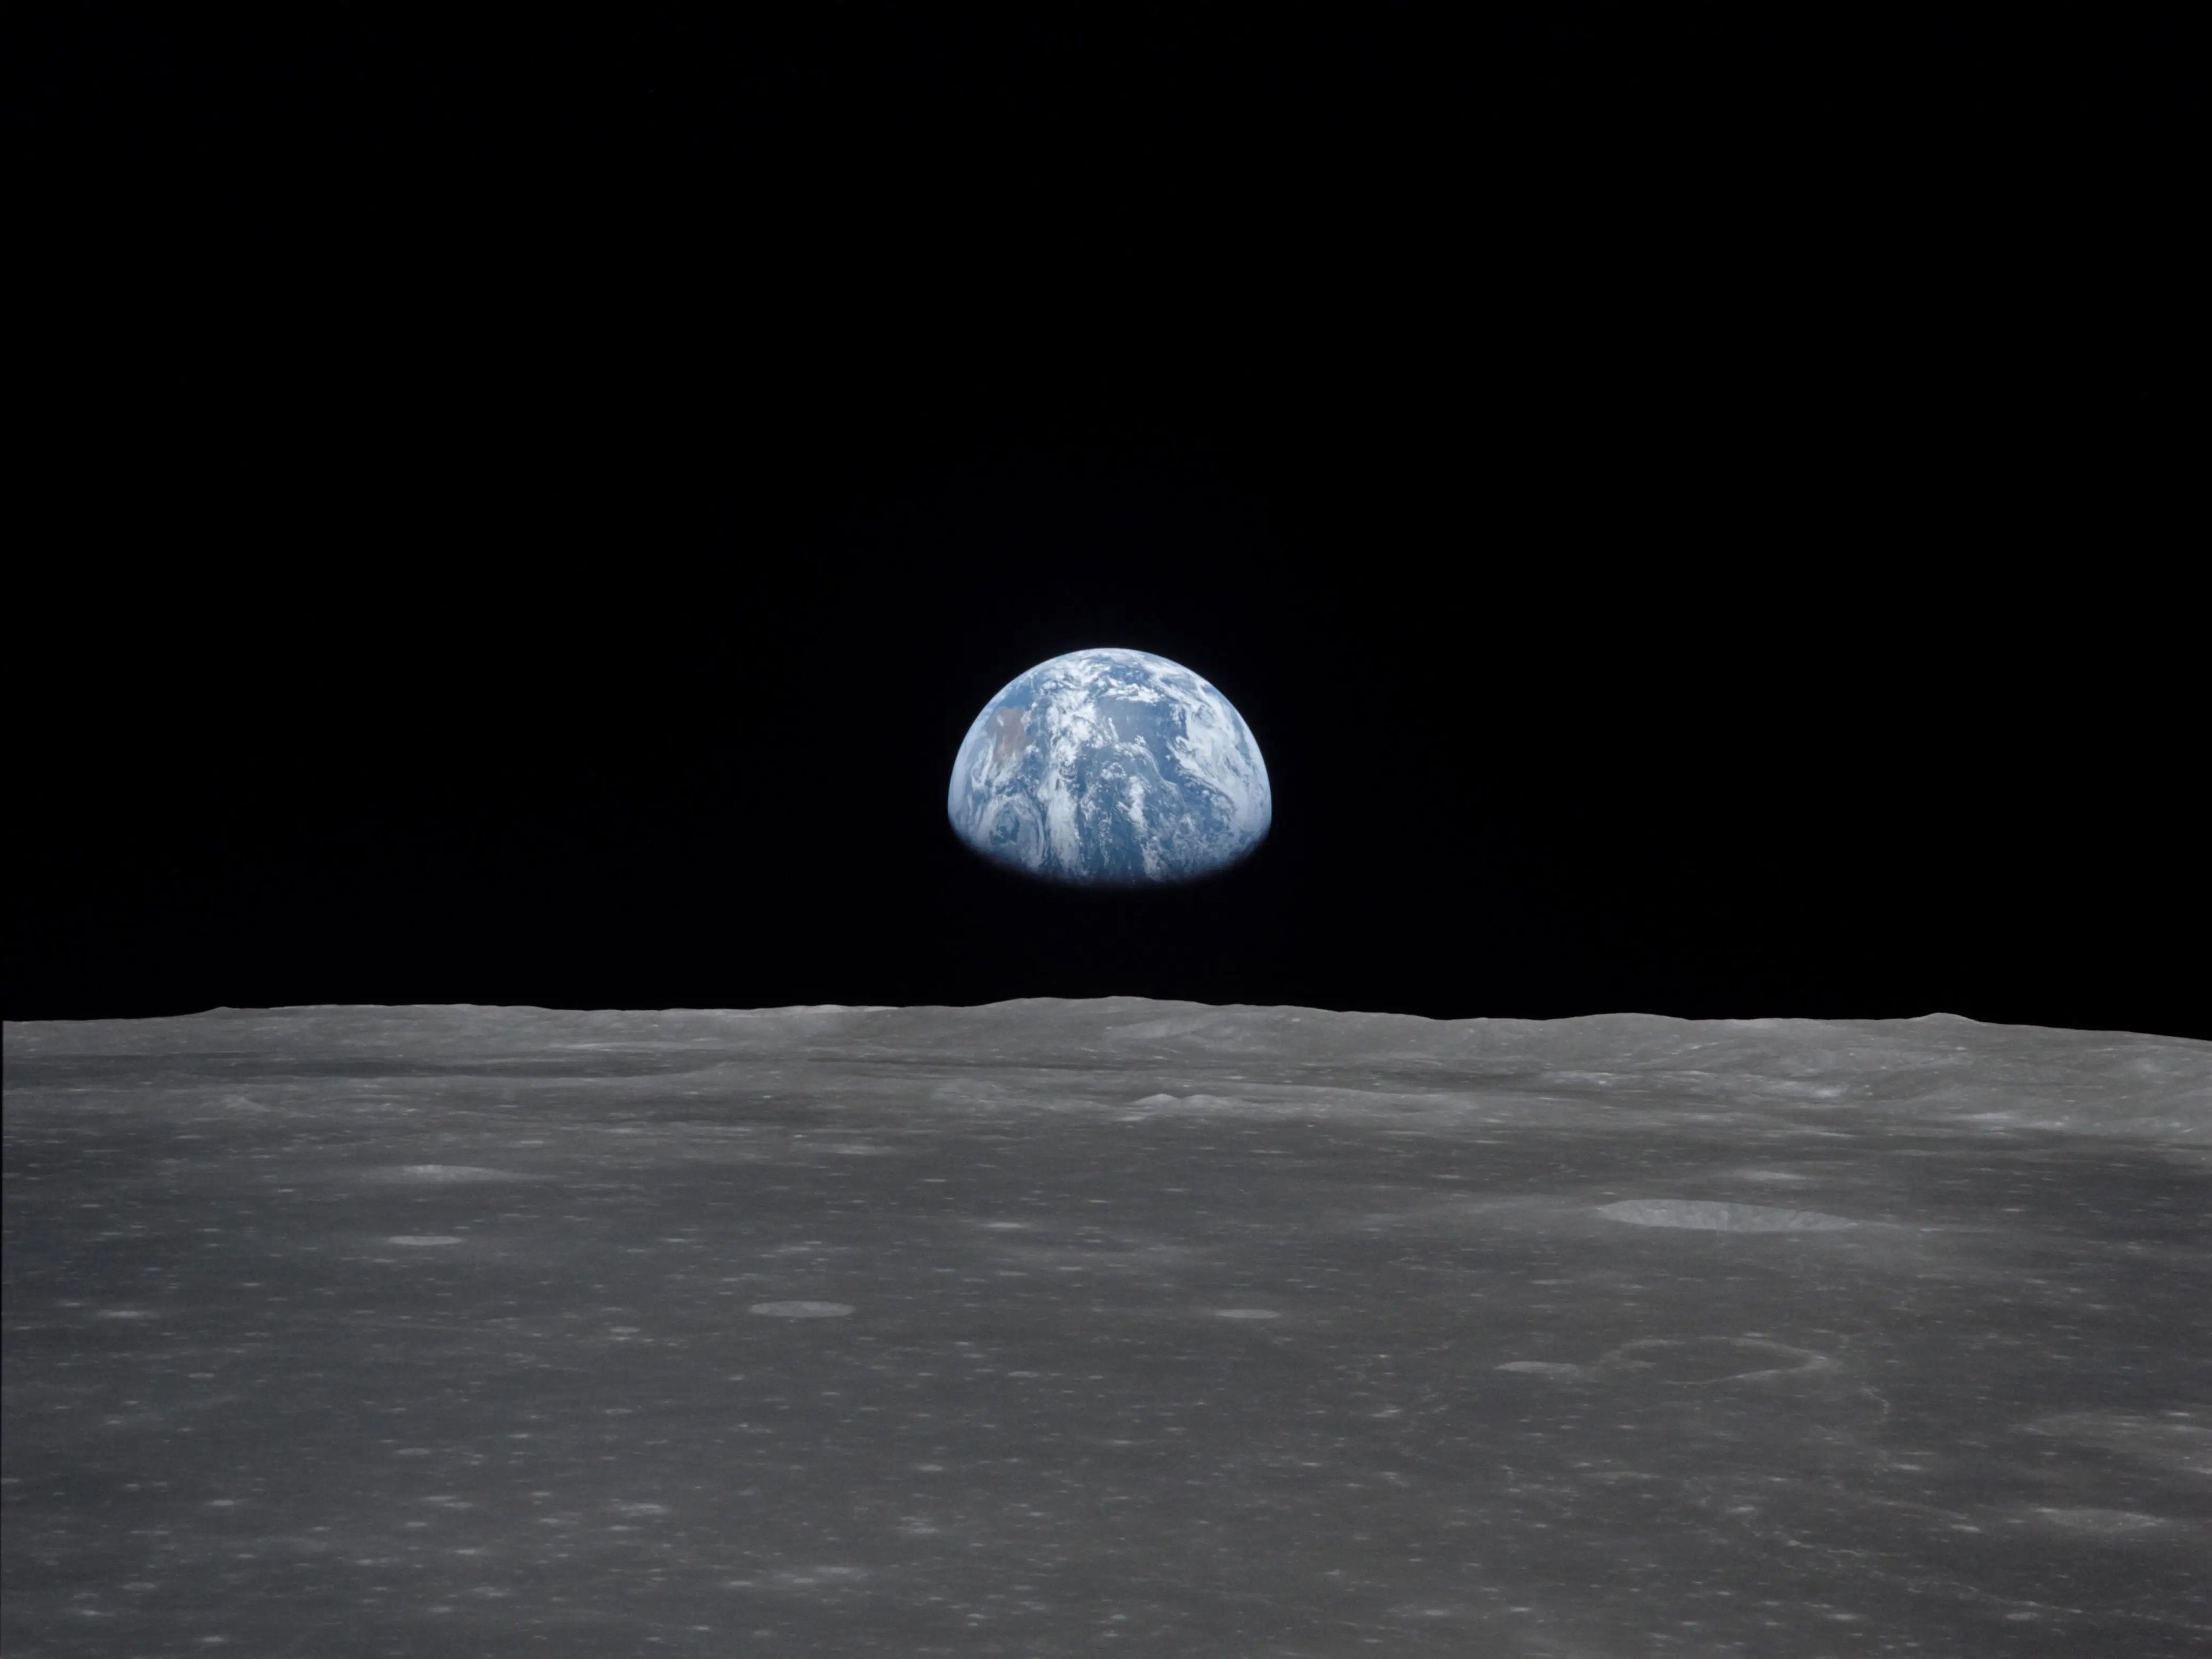 Fotografía de la Tierra captada desde la Luna por la misión Apolo 11.